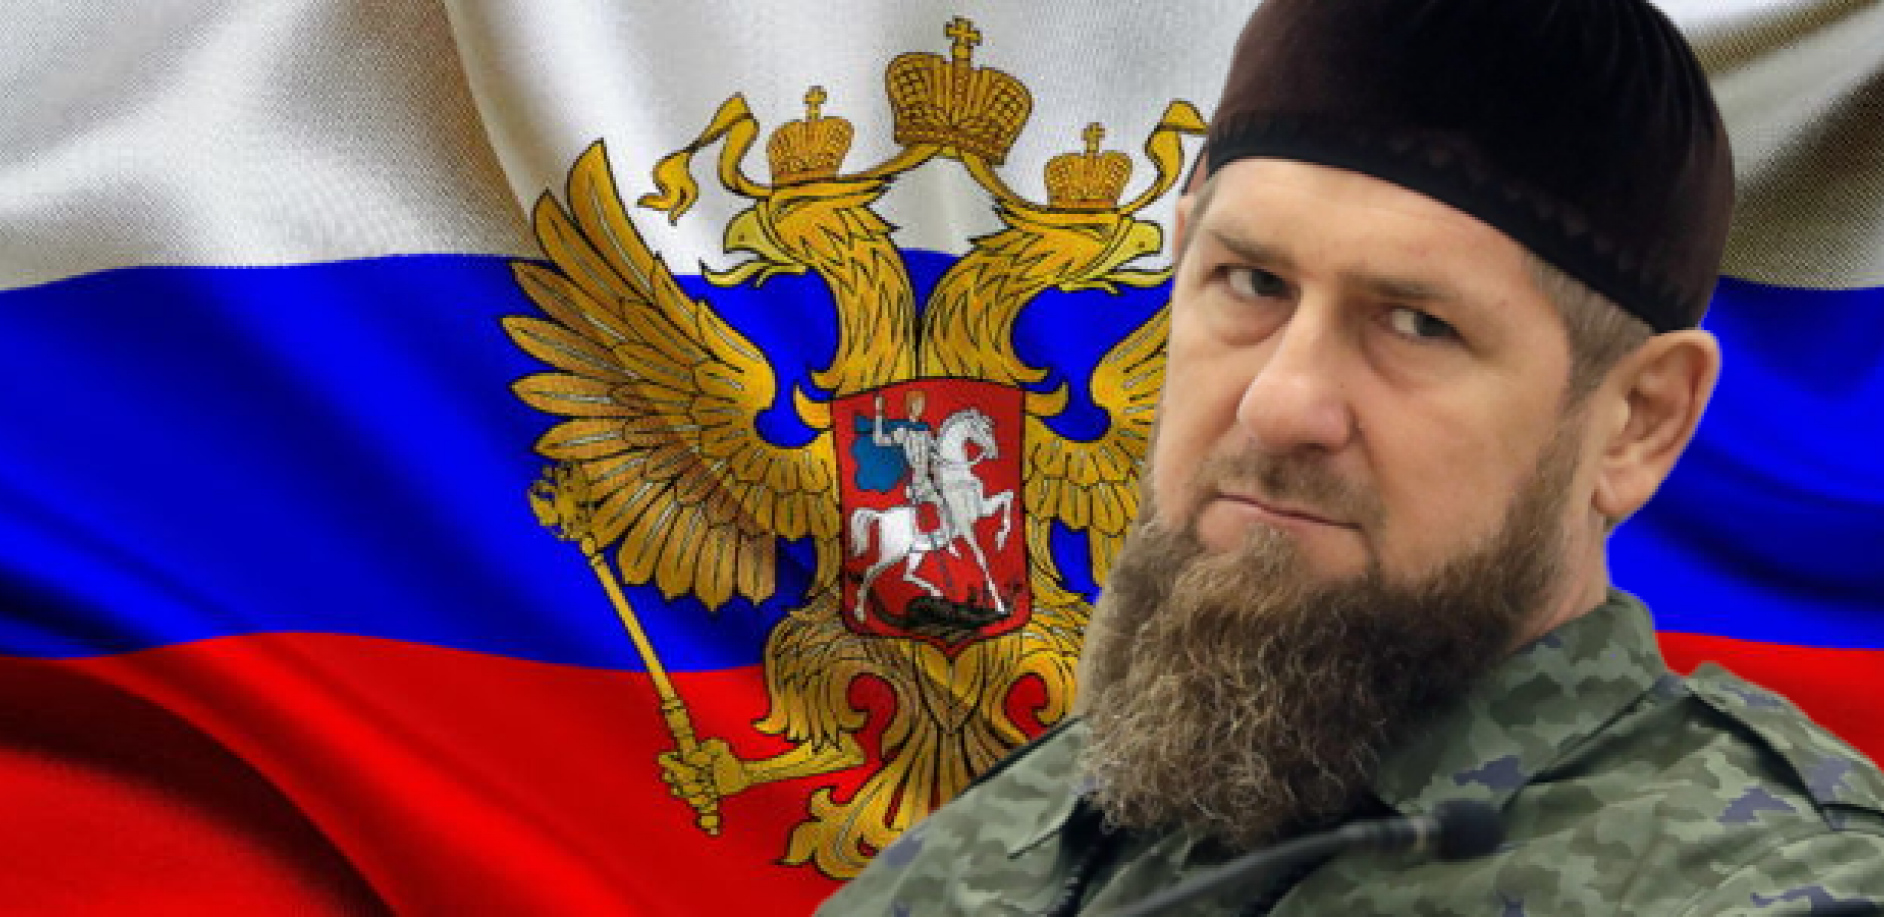 PUTINOV SPECIJALAC ULAZI U DONBAS? Kadirov predvodi Čečene u akciji ruske vojske na Ukrajinu (VIDEO)